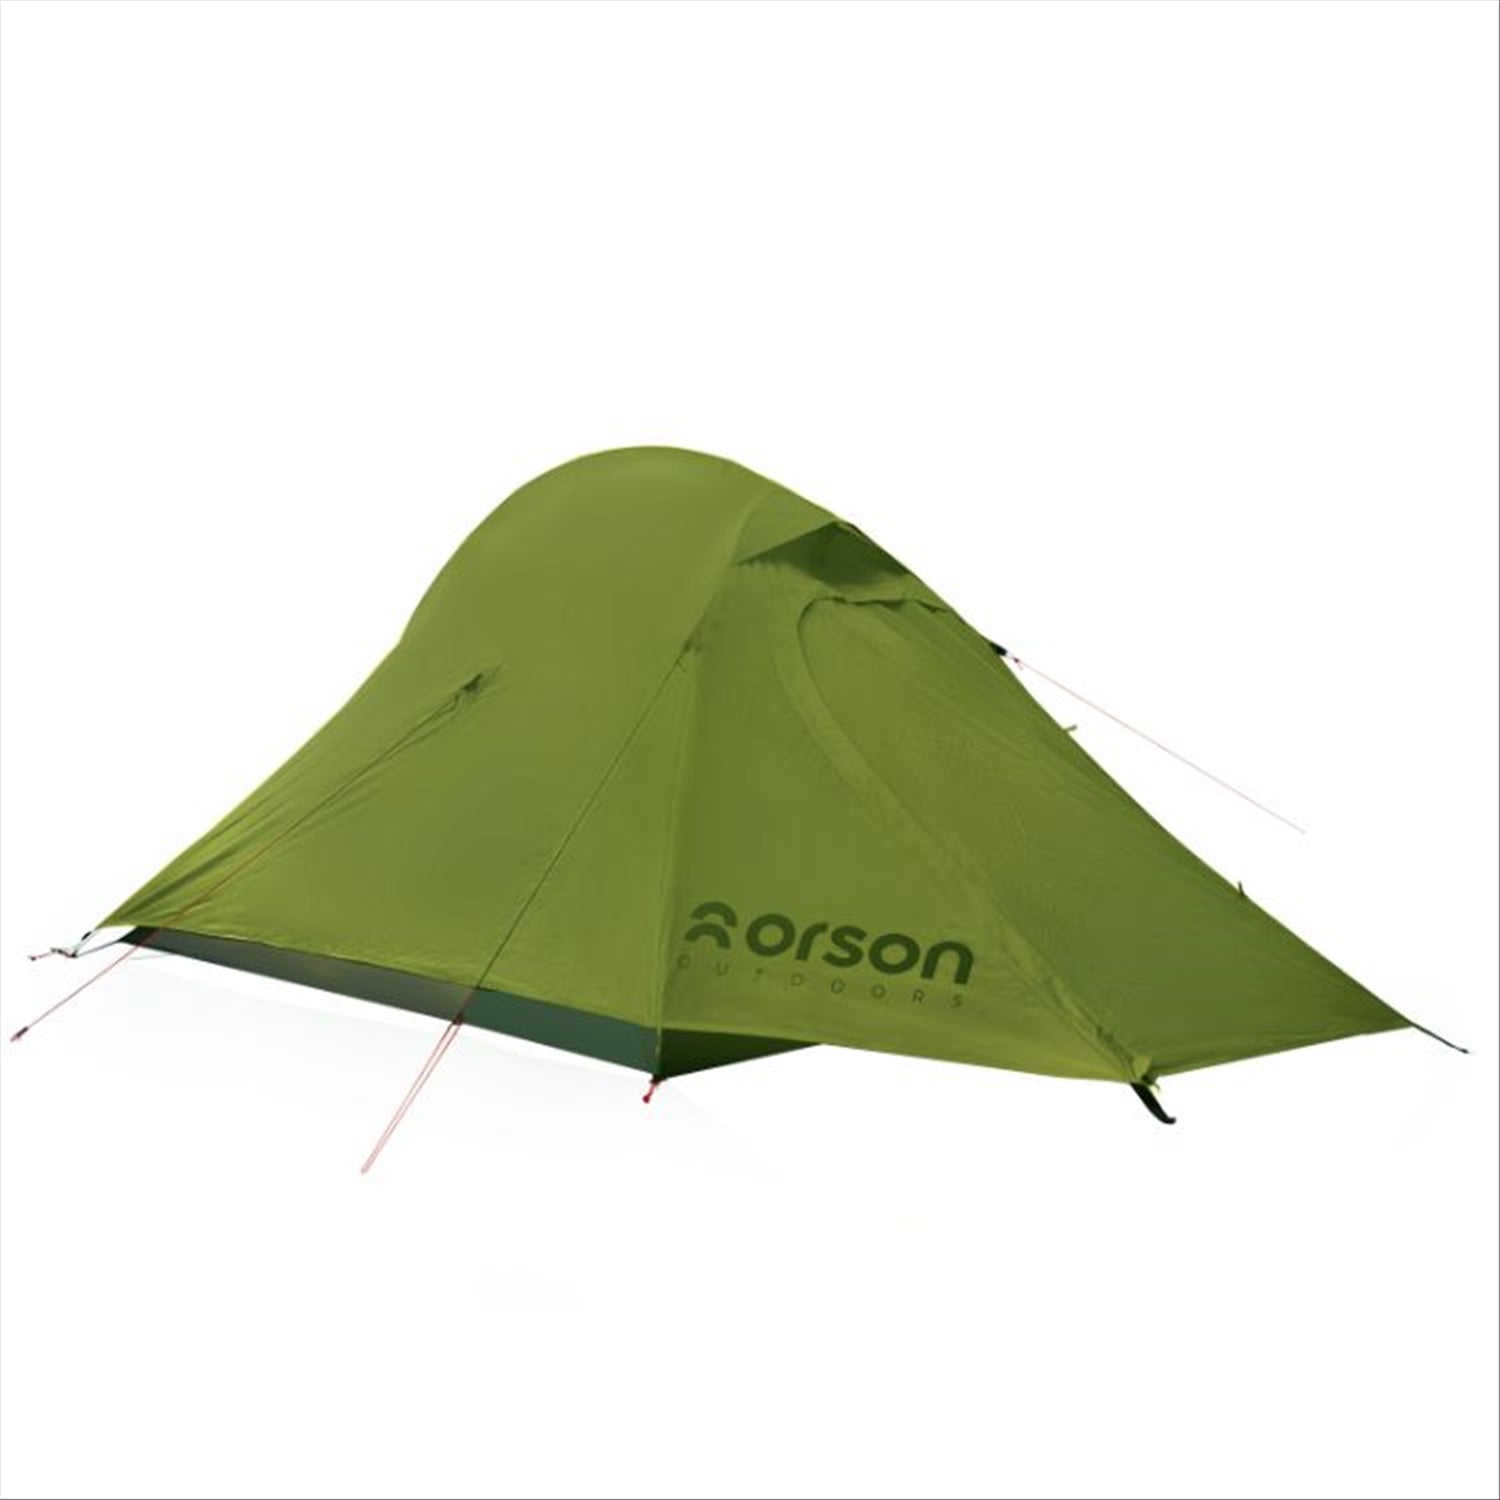 Orson Tracker Pro 2 – Ripstop Silnylon 2 Person Camping Tent 1.7kg